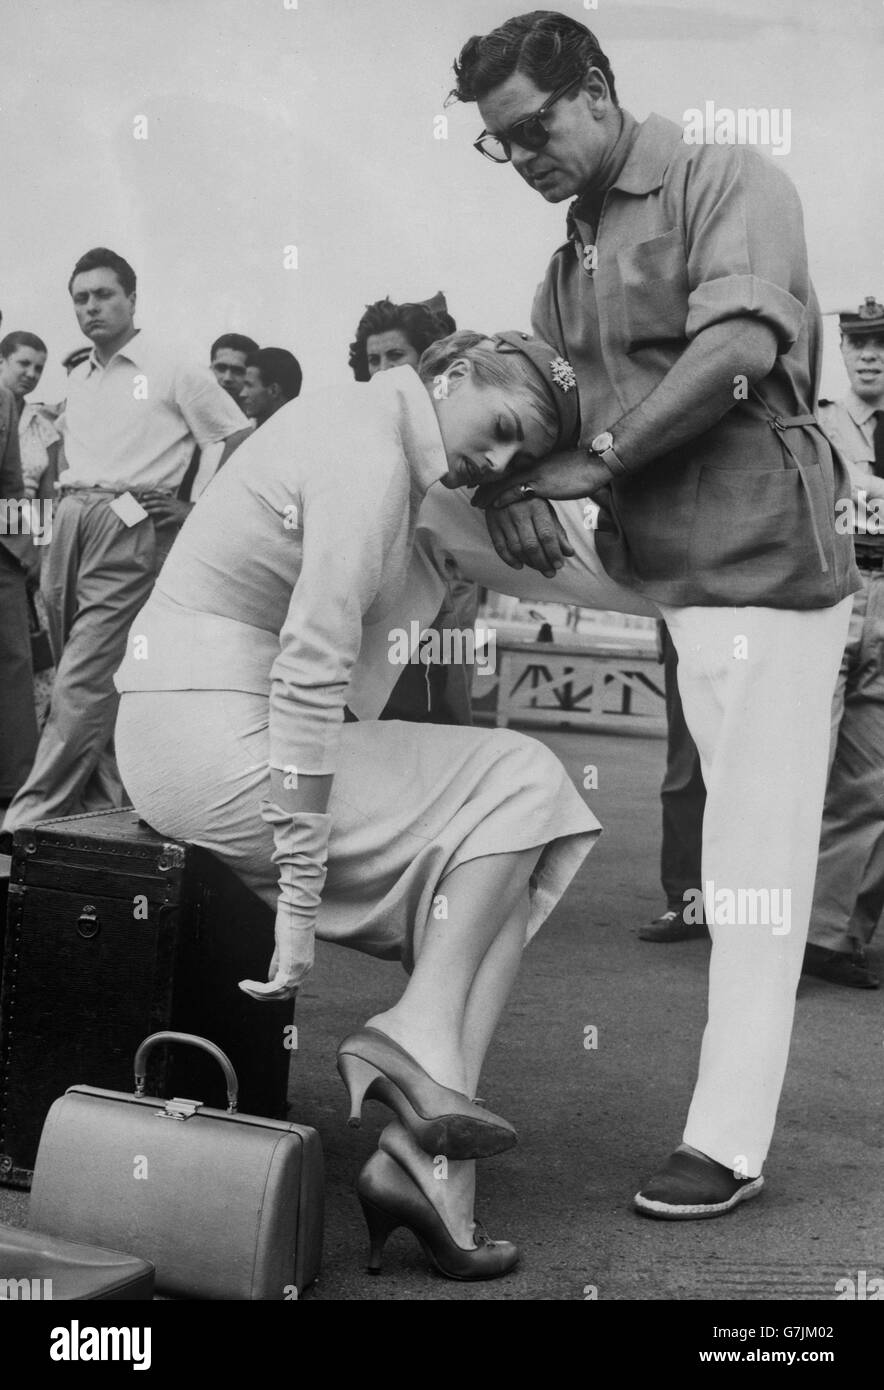 In mezzo al trambusto delle riprese, l'attrice svedese Anita Ekberg comincia a sentirsi stanca mentre appoggia la testa sul marito britannico dell'attore Anthony Steel. Si trova a Roma per la ripresa del suo nuovo film "Interpol". Foto Stock